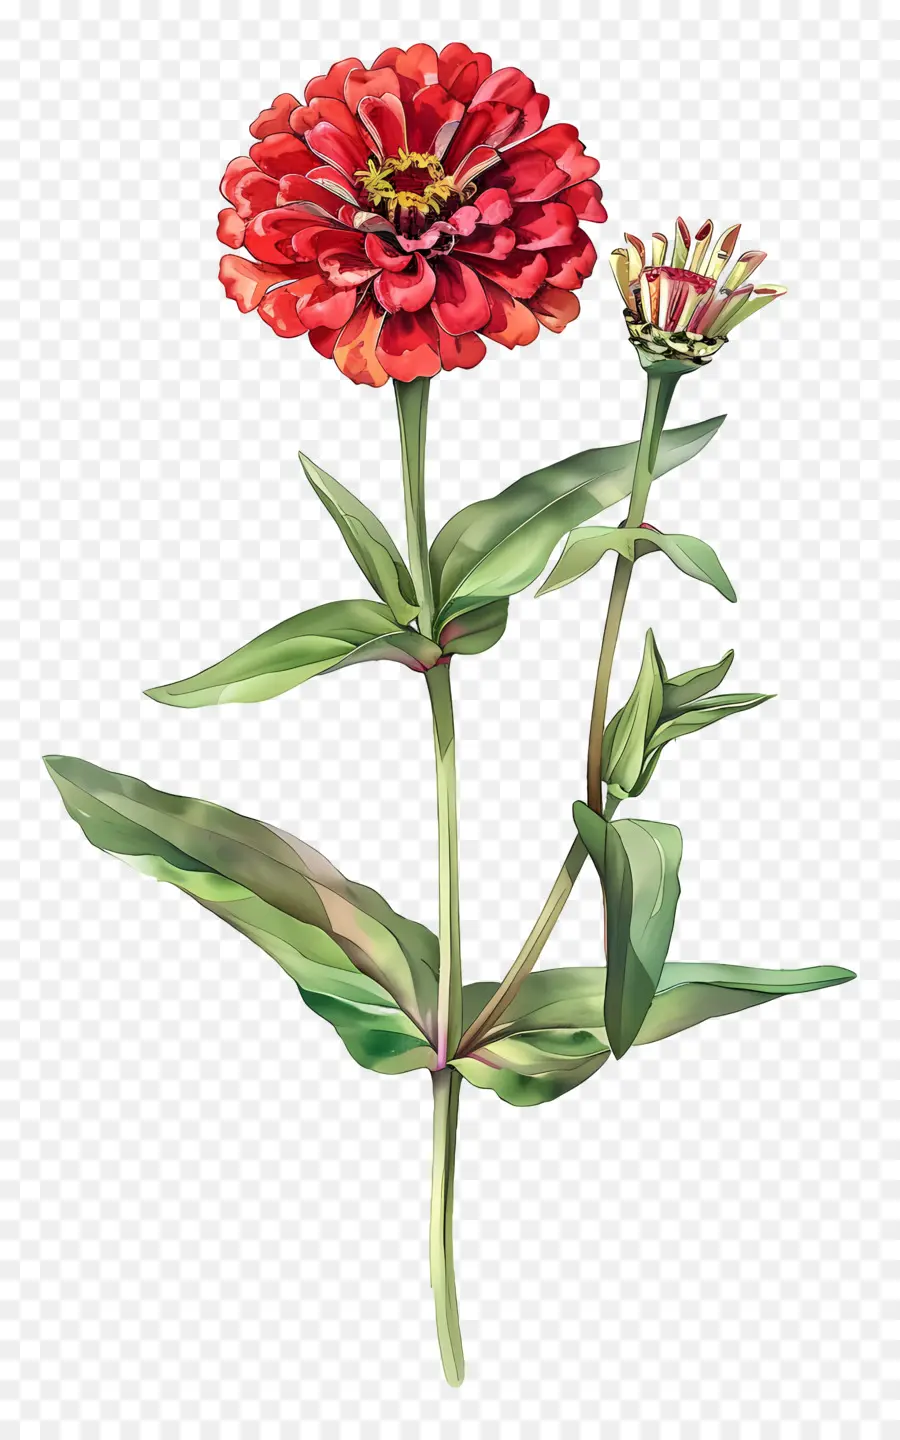 hoa đỏ - Hoa Zinnia đỏ với lá màu xanh lá cây, màu sắc rực rỡ